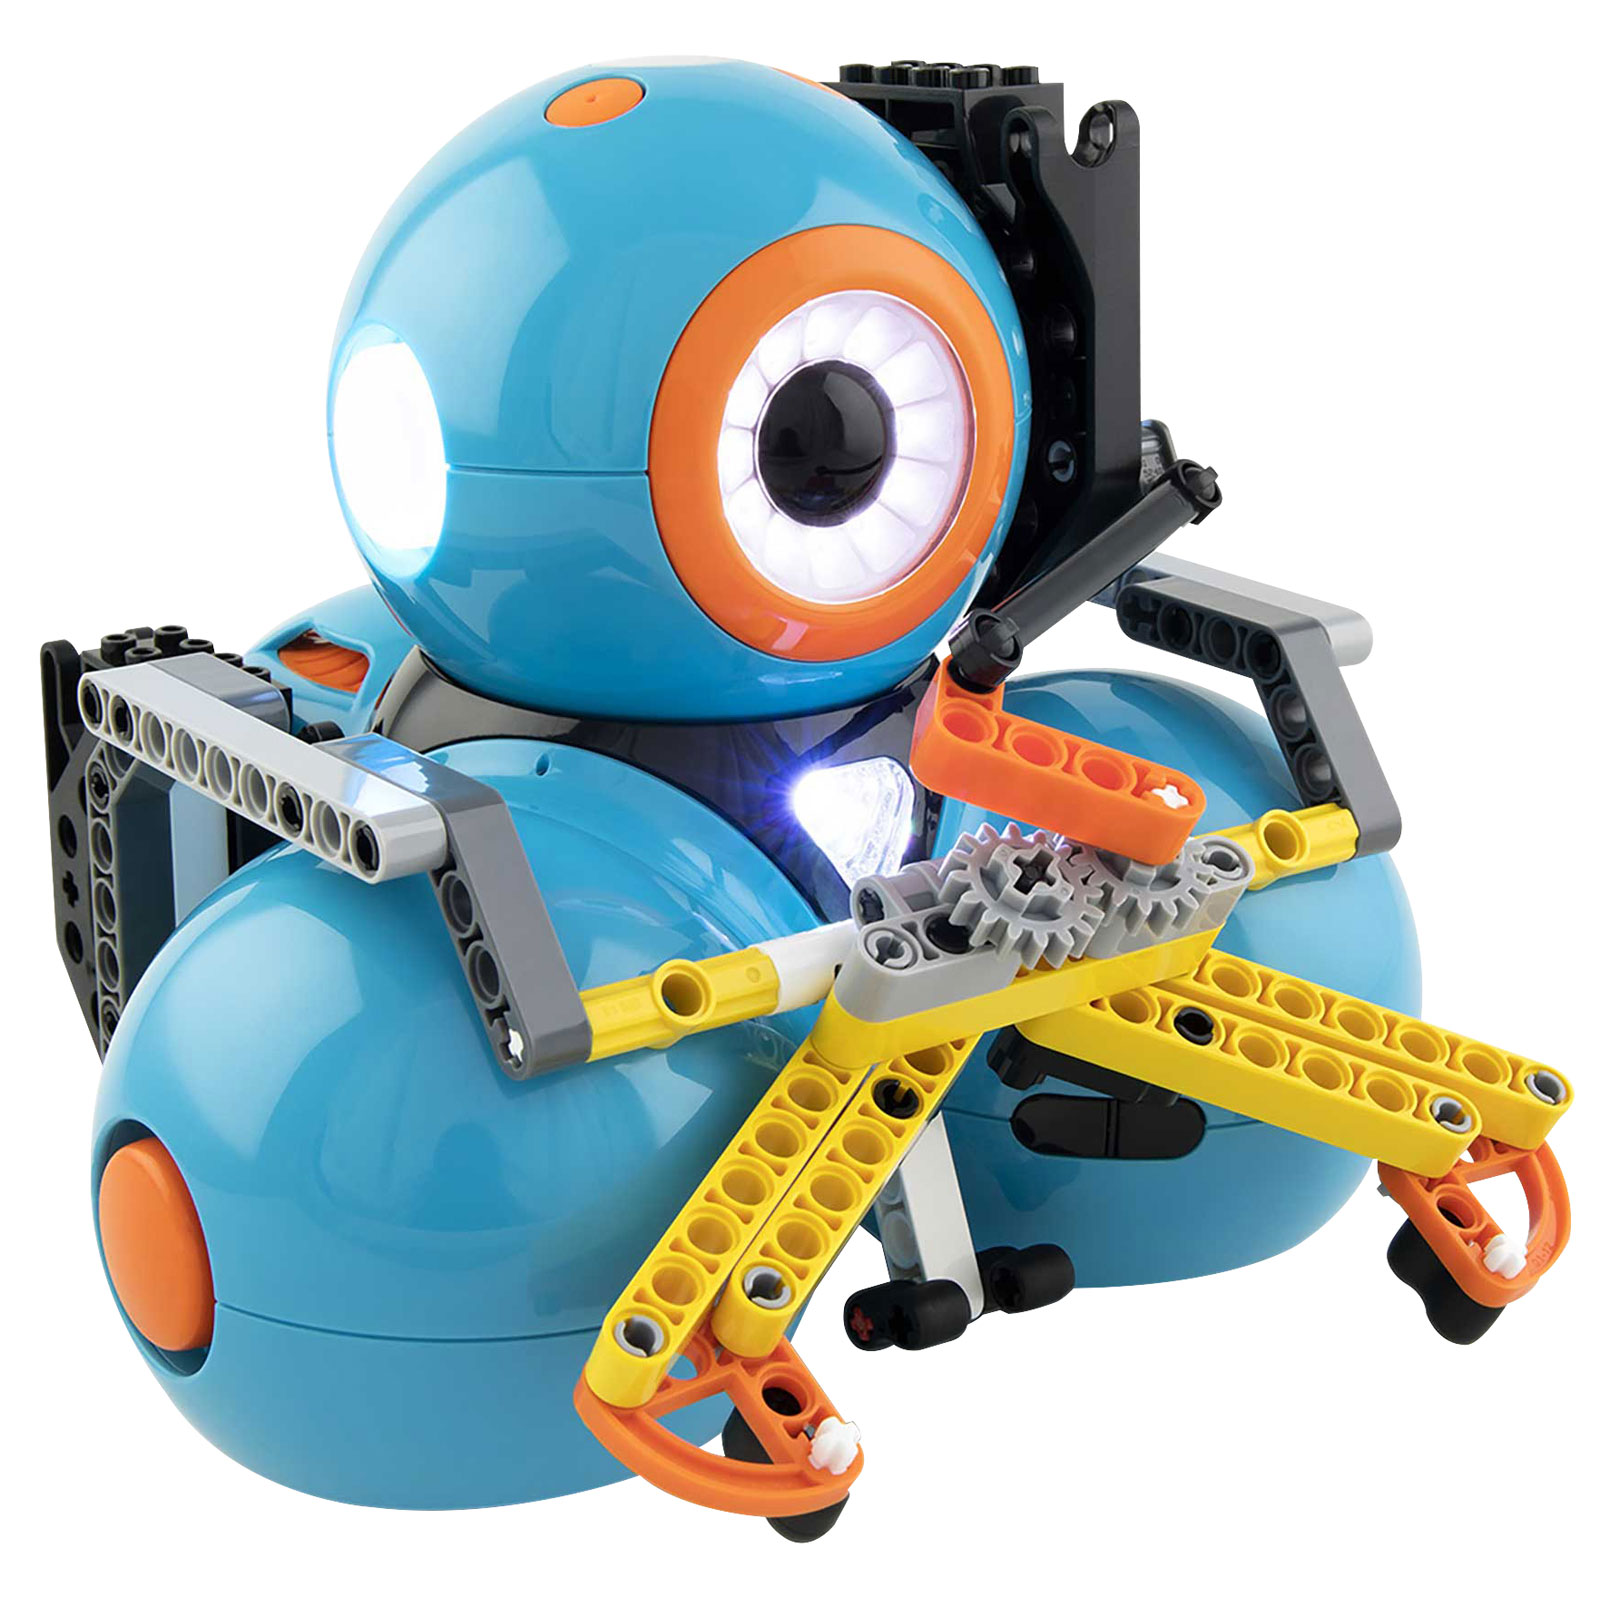 Robots + Accessories – Wonder Workshop